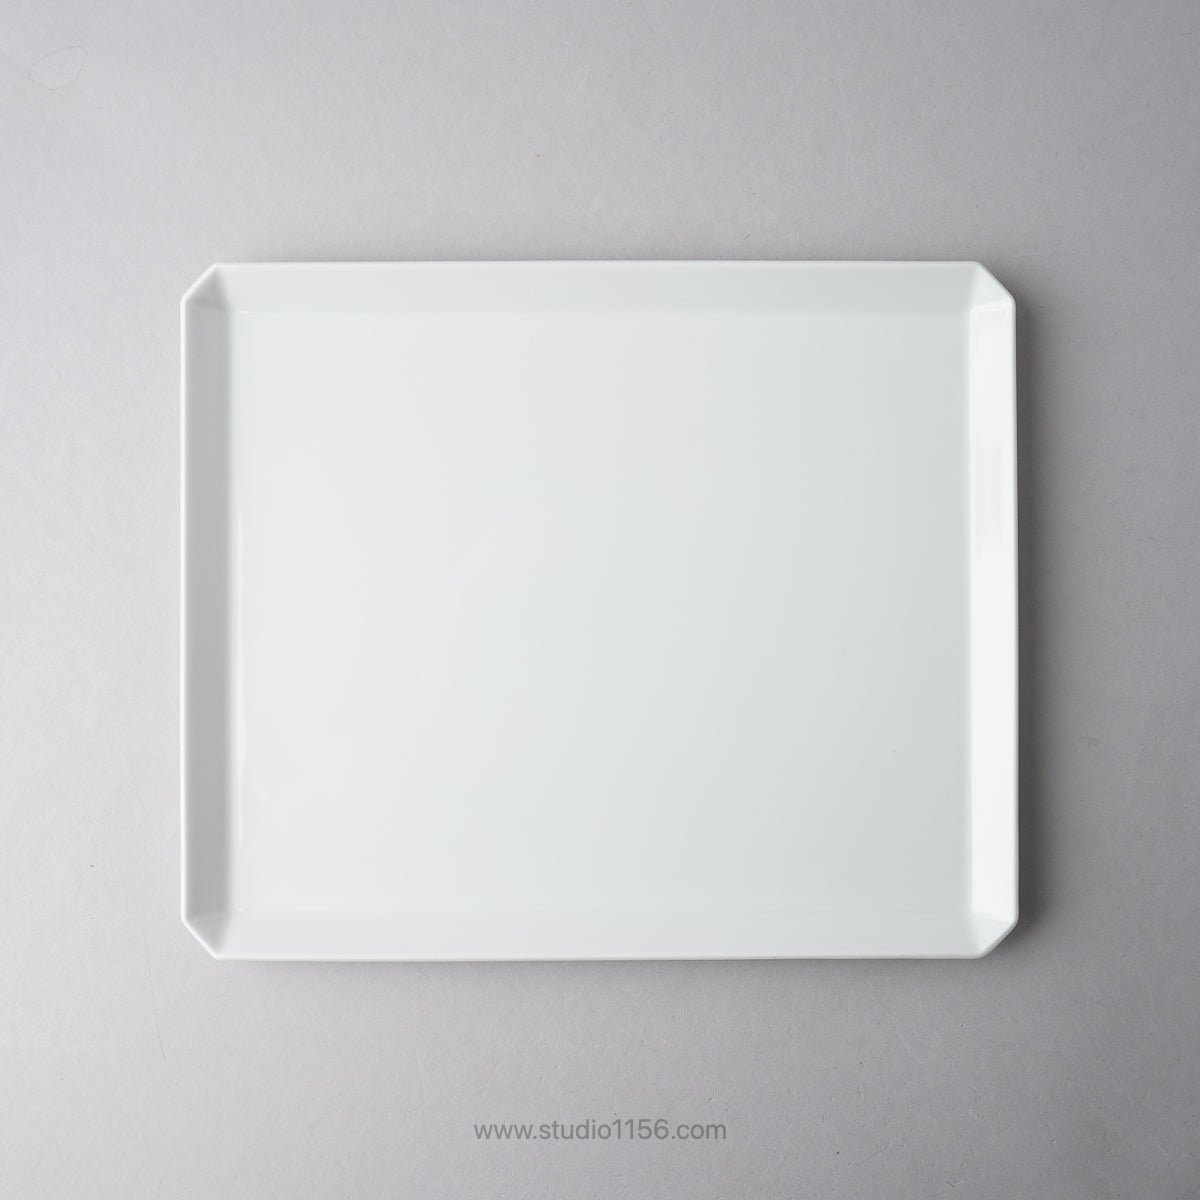 有田焼 スクエアプレート プレーン ホワイト / TY Square Plate Plain White 270 1616 / Arita Japan Studio1156